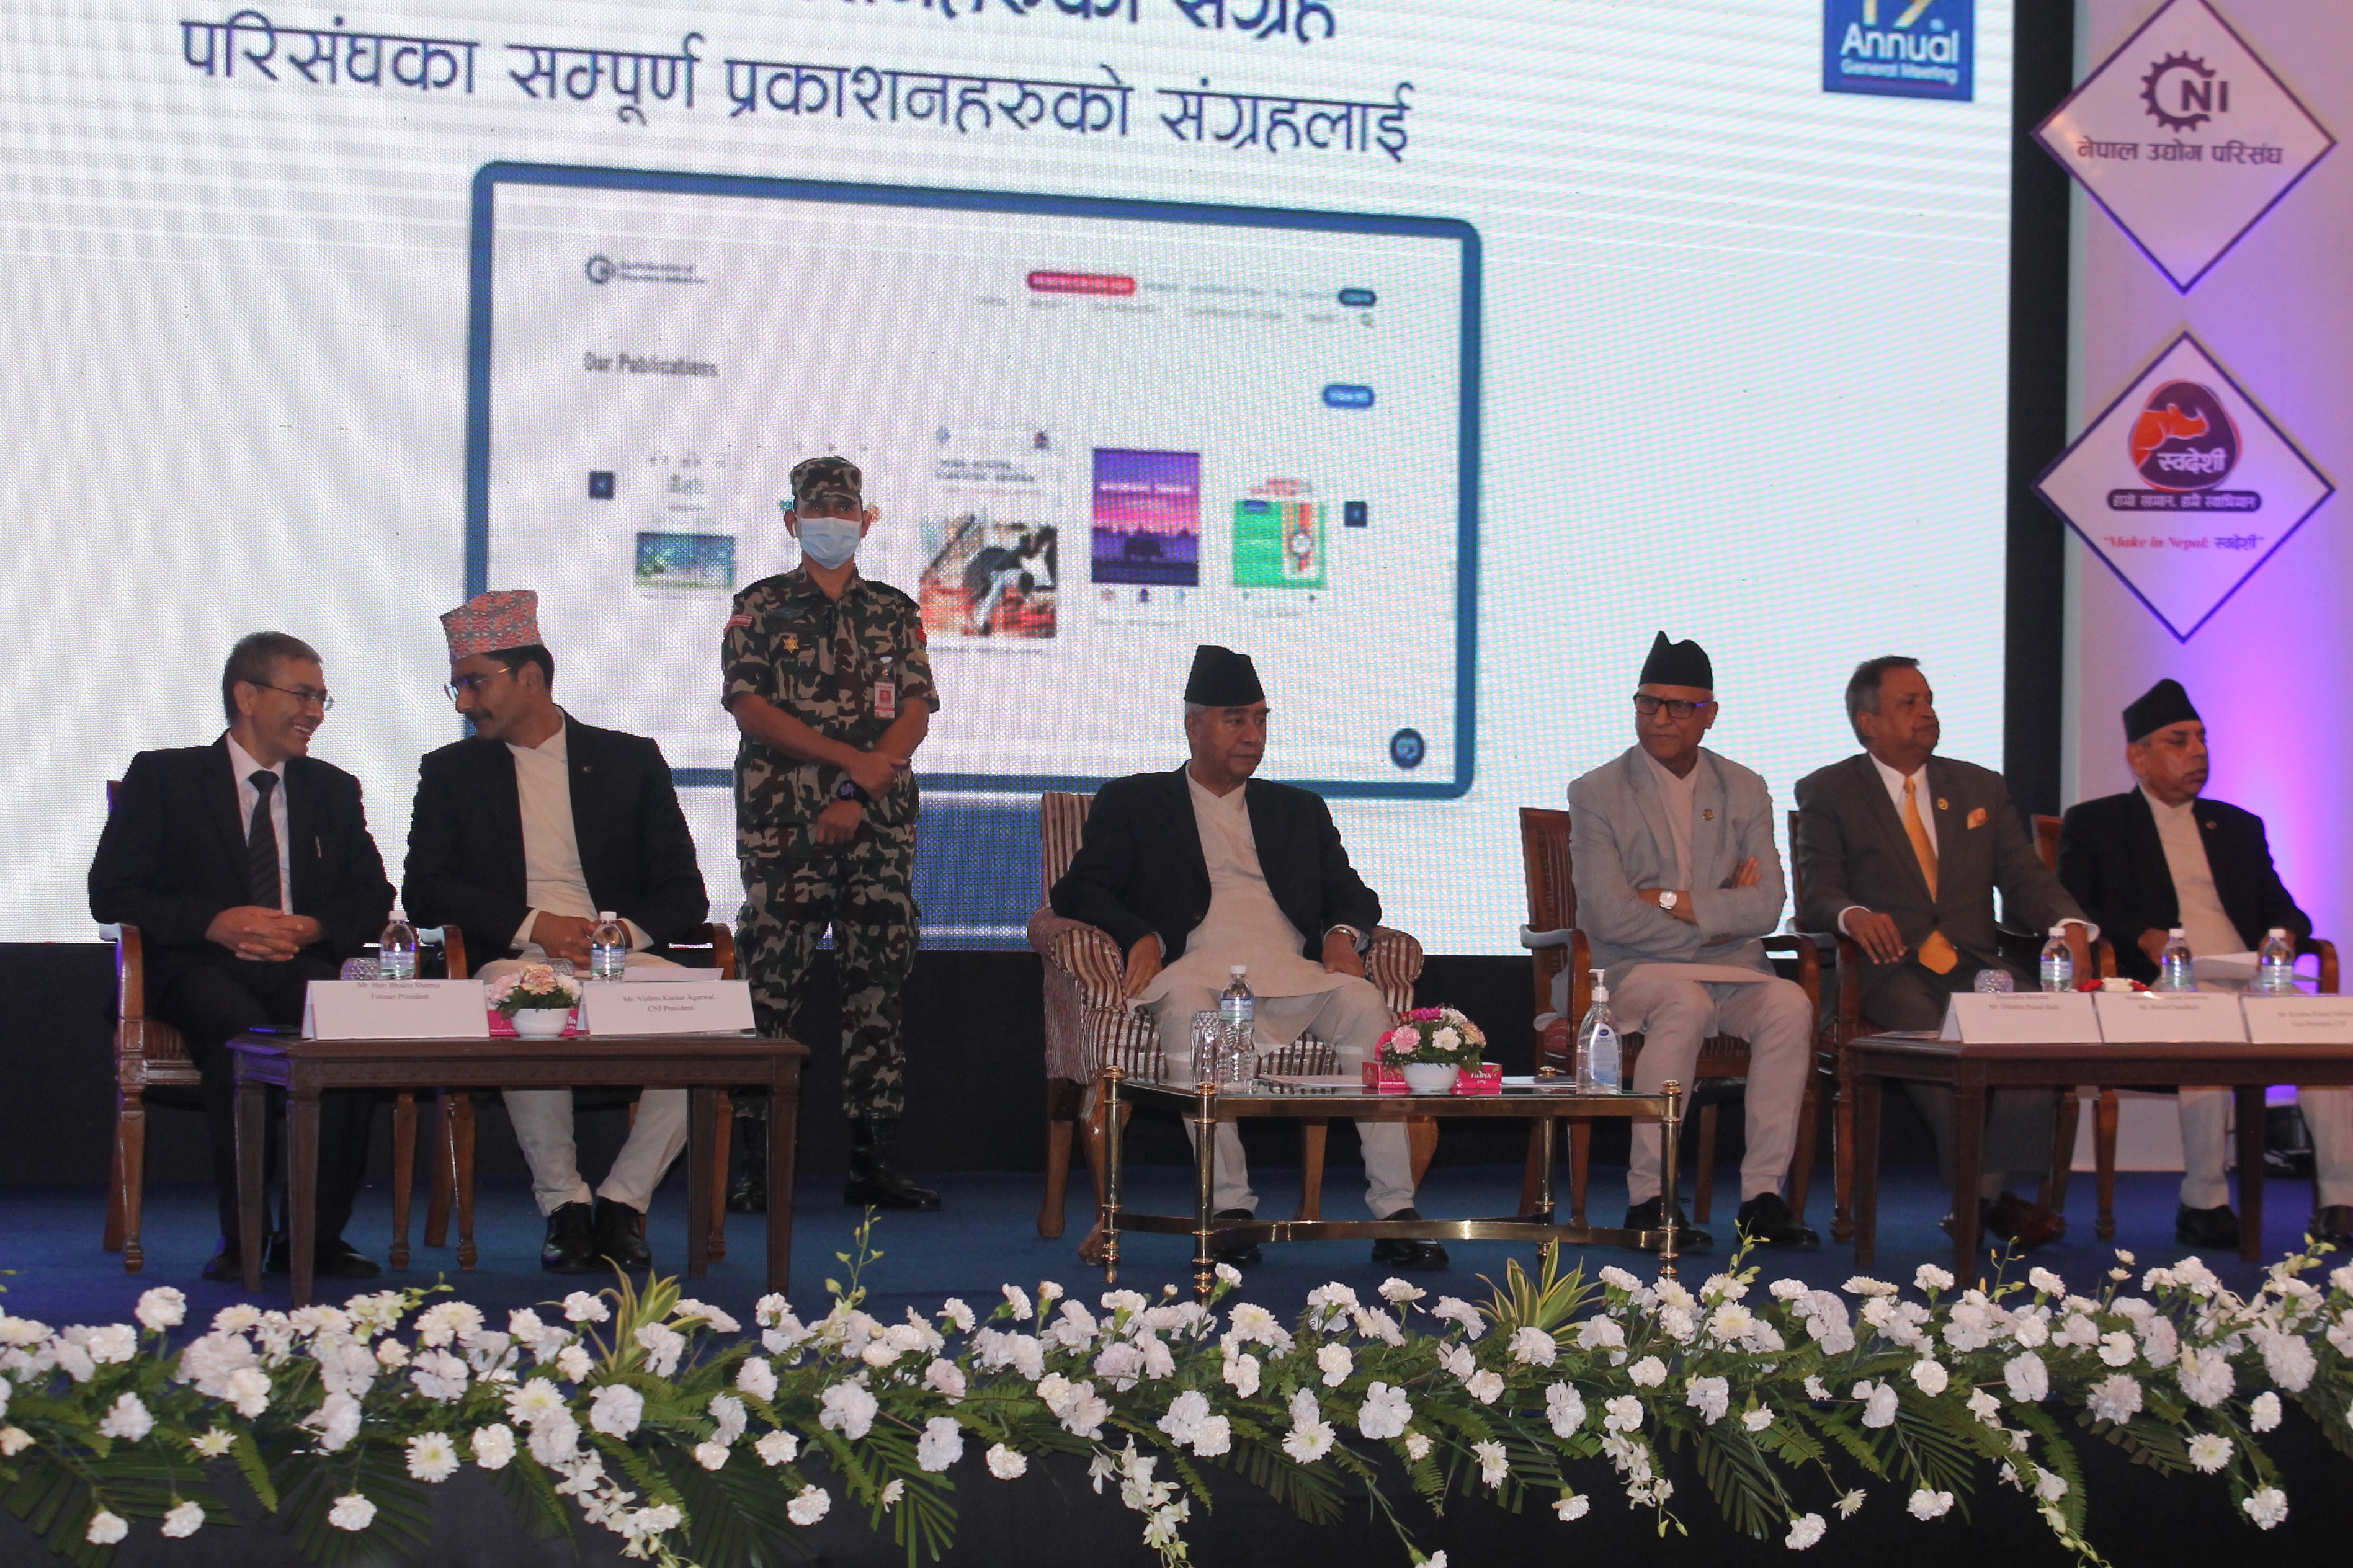 नेपाल उद्योग परिसंघको साधारण सभा सम्पन्न,प्रधानमन्त्रीबाट बजेट कार्यान्वयन योजना सार्वजनिक